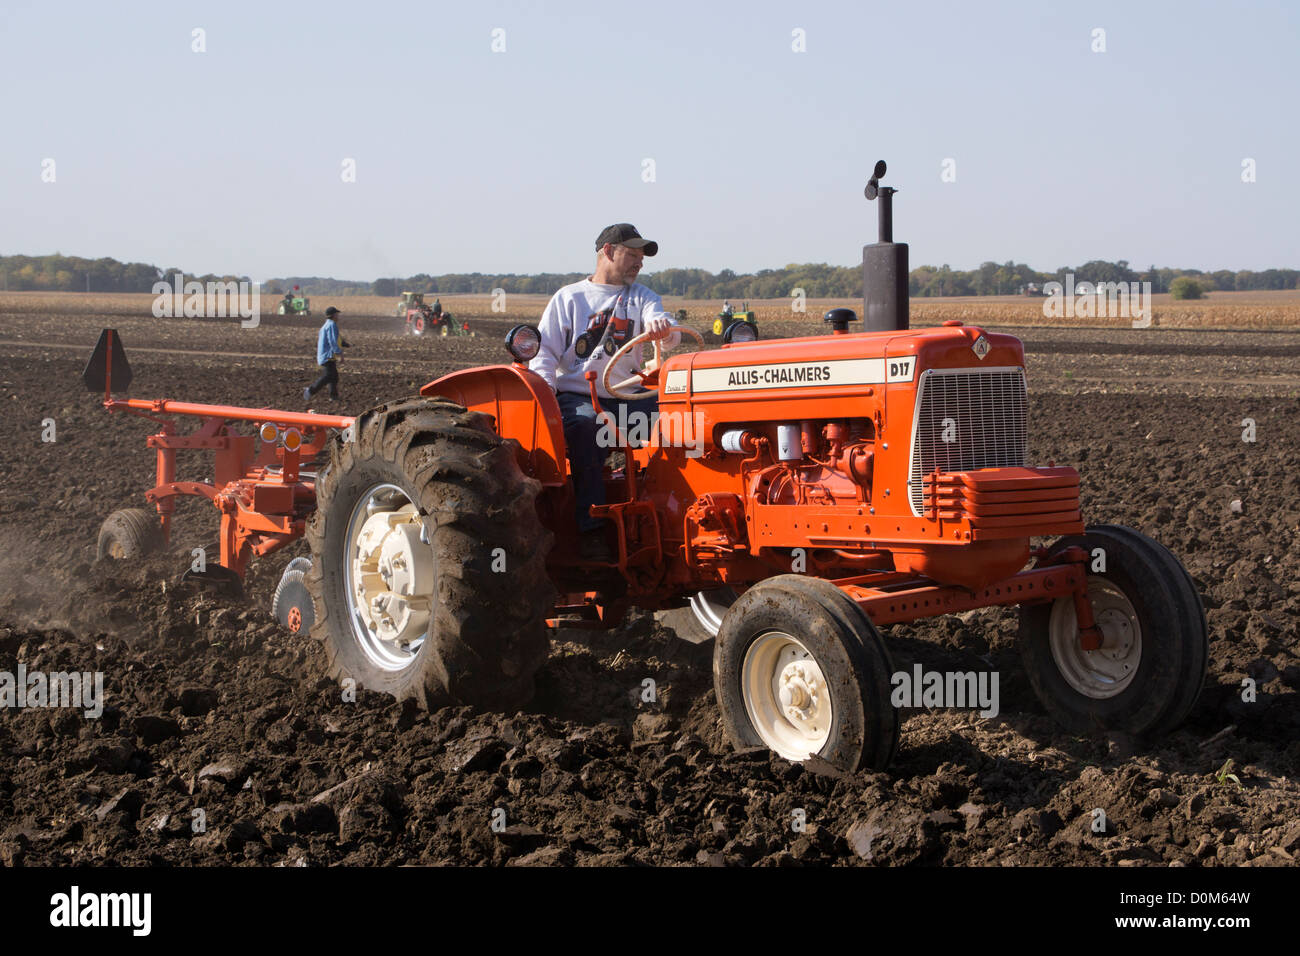 Allis Chalmers, modèle D17, labourer un champ près d'Hébron, Illinos lors d'une démonstration de tracteur antique.sillon Banque D'Images